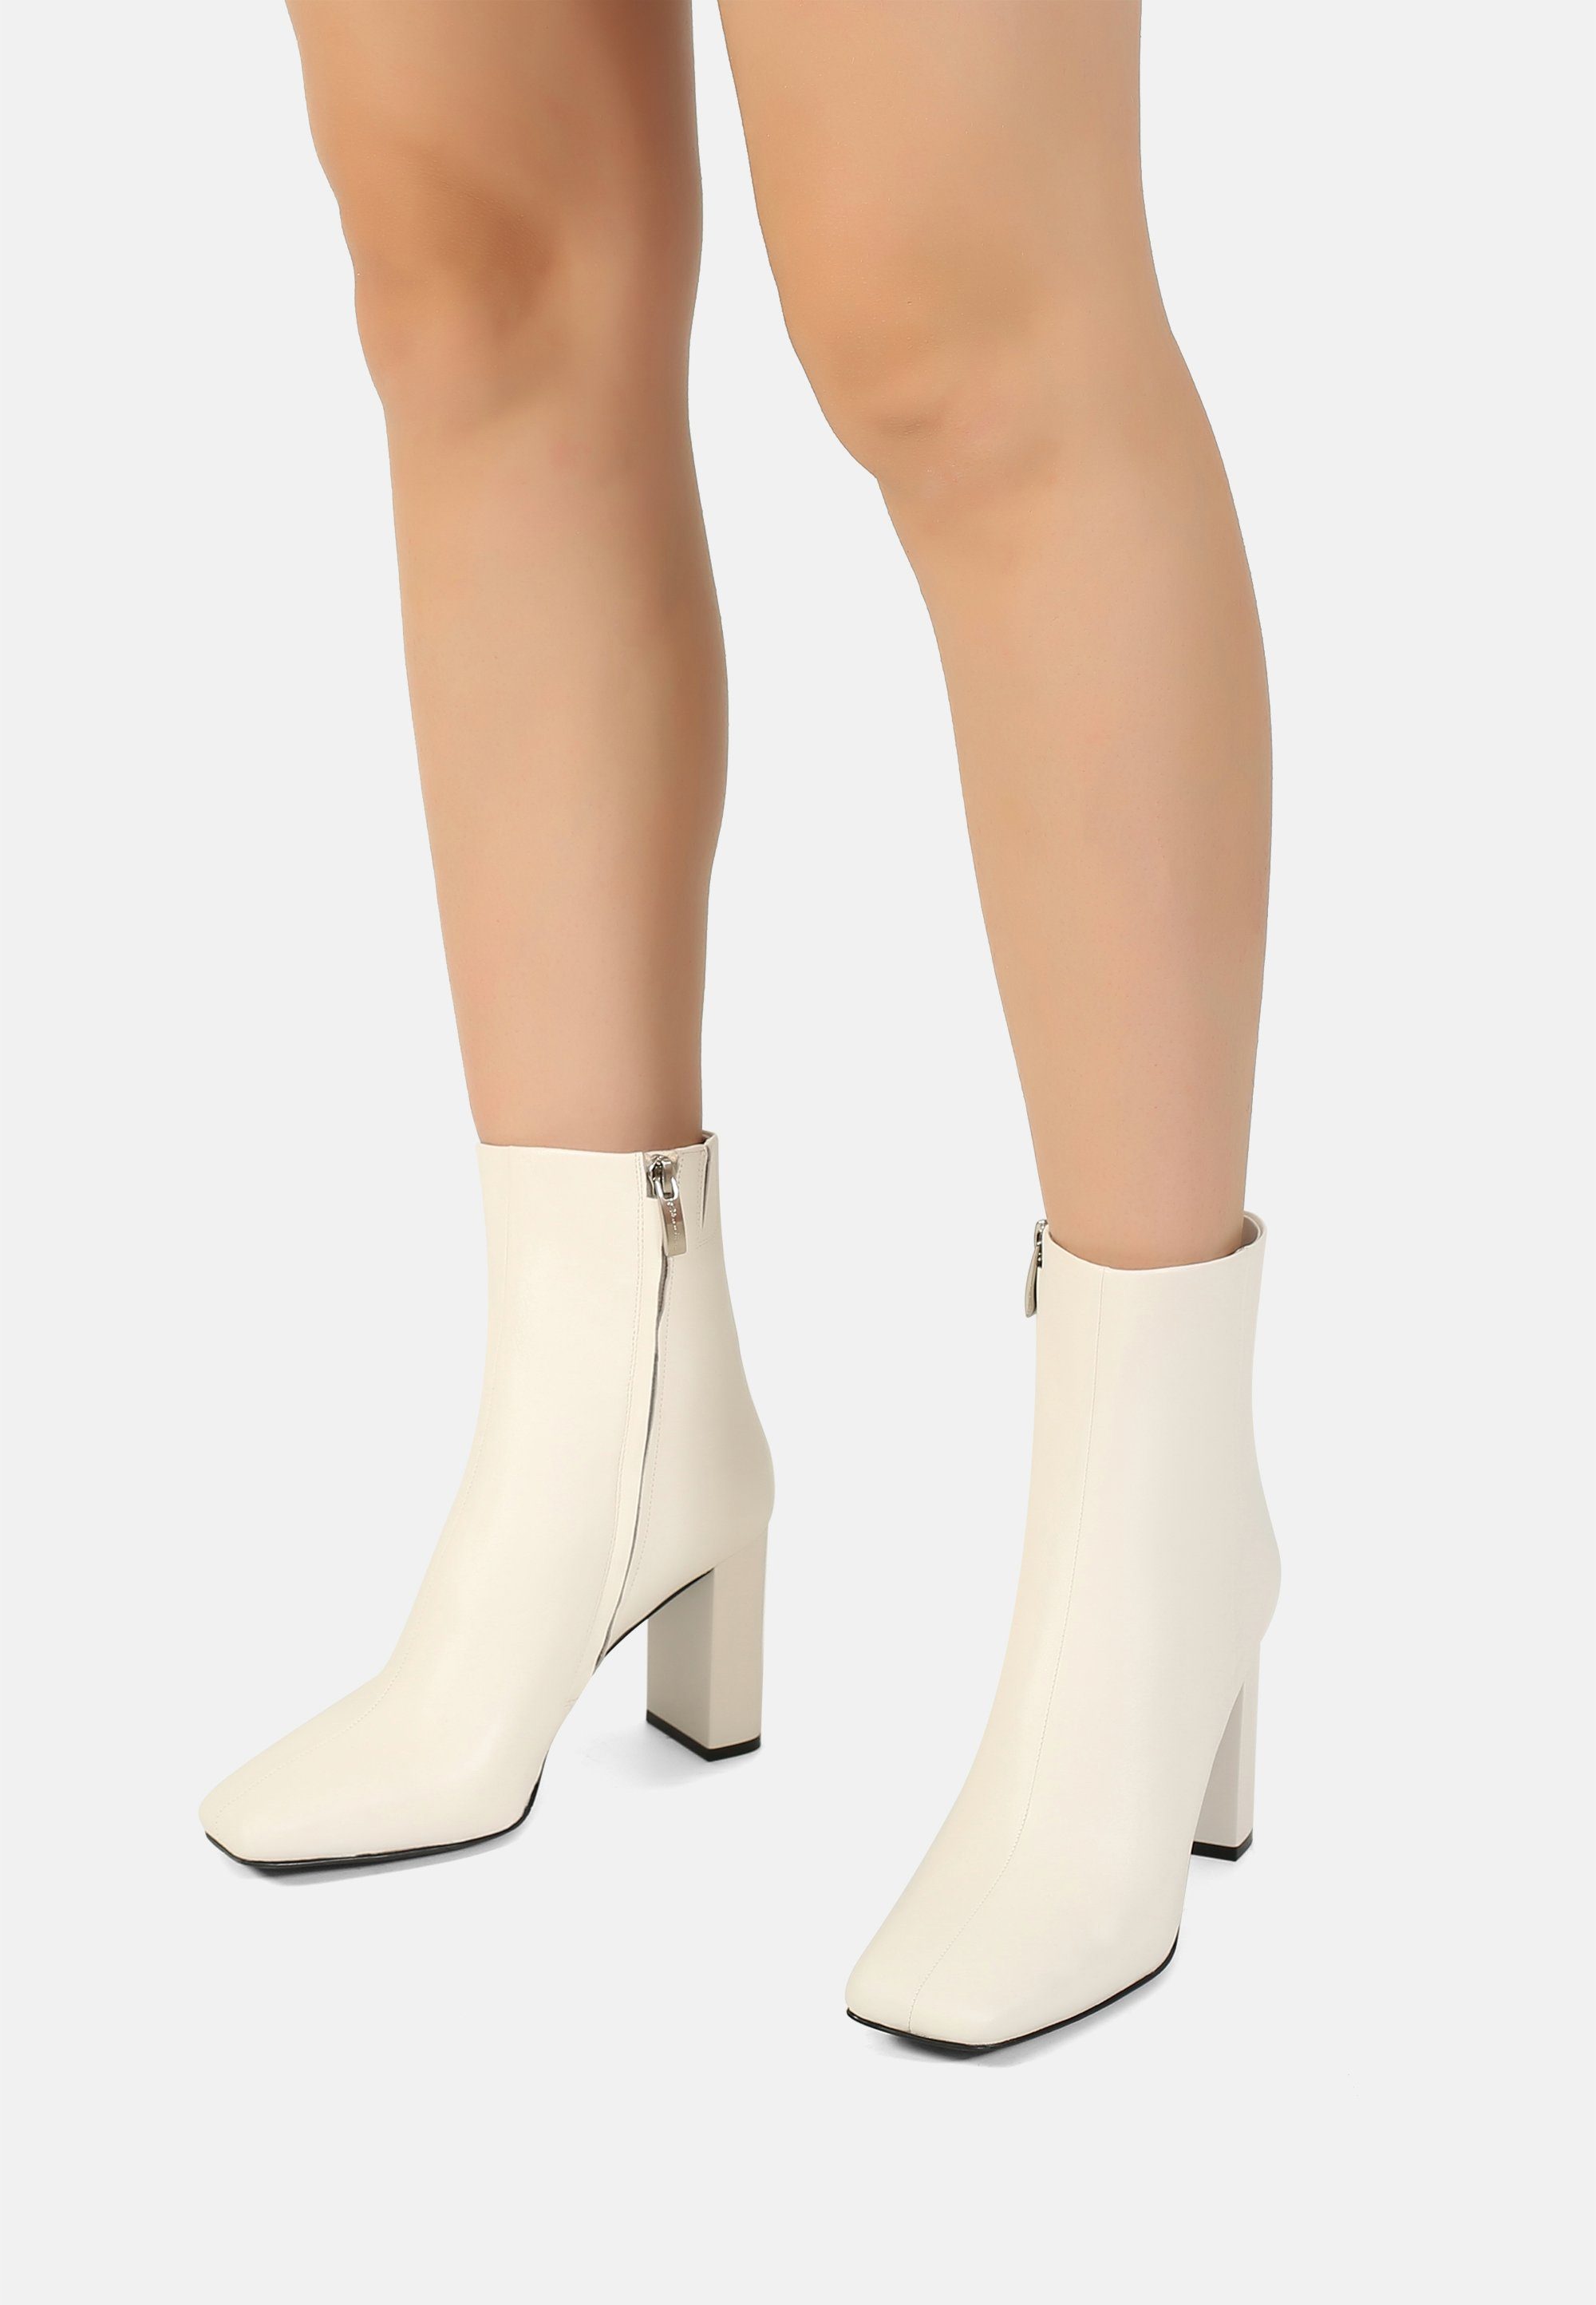 Schuhe Stiefeletten ekonika Stiefeletten Ekonika Stiefelette mit praktischem Reißverschluss